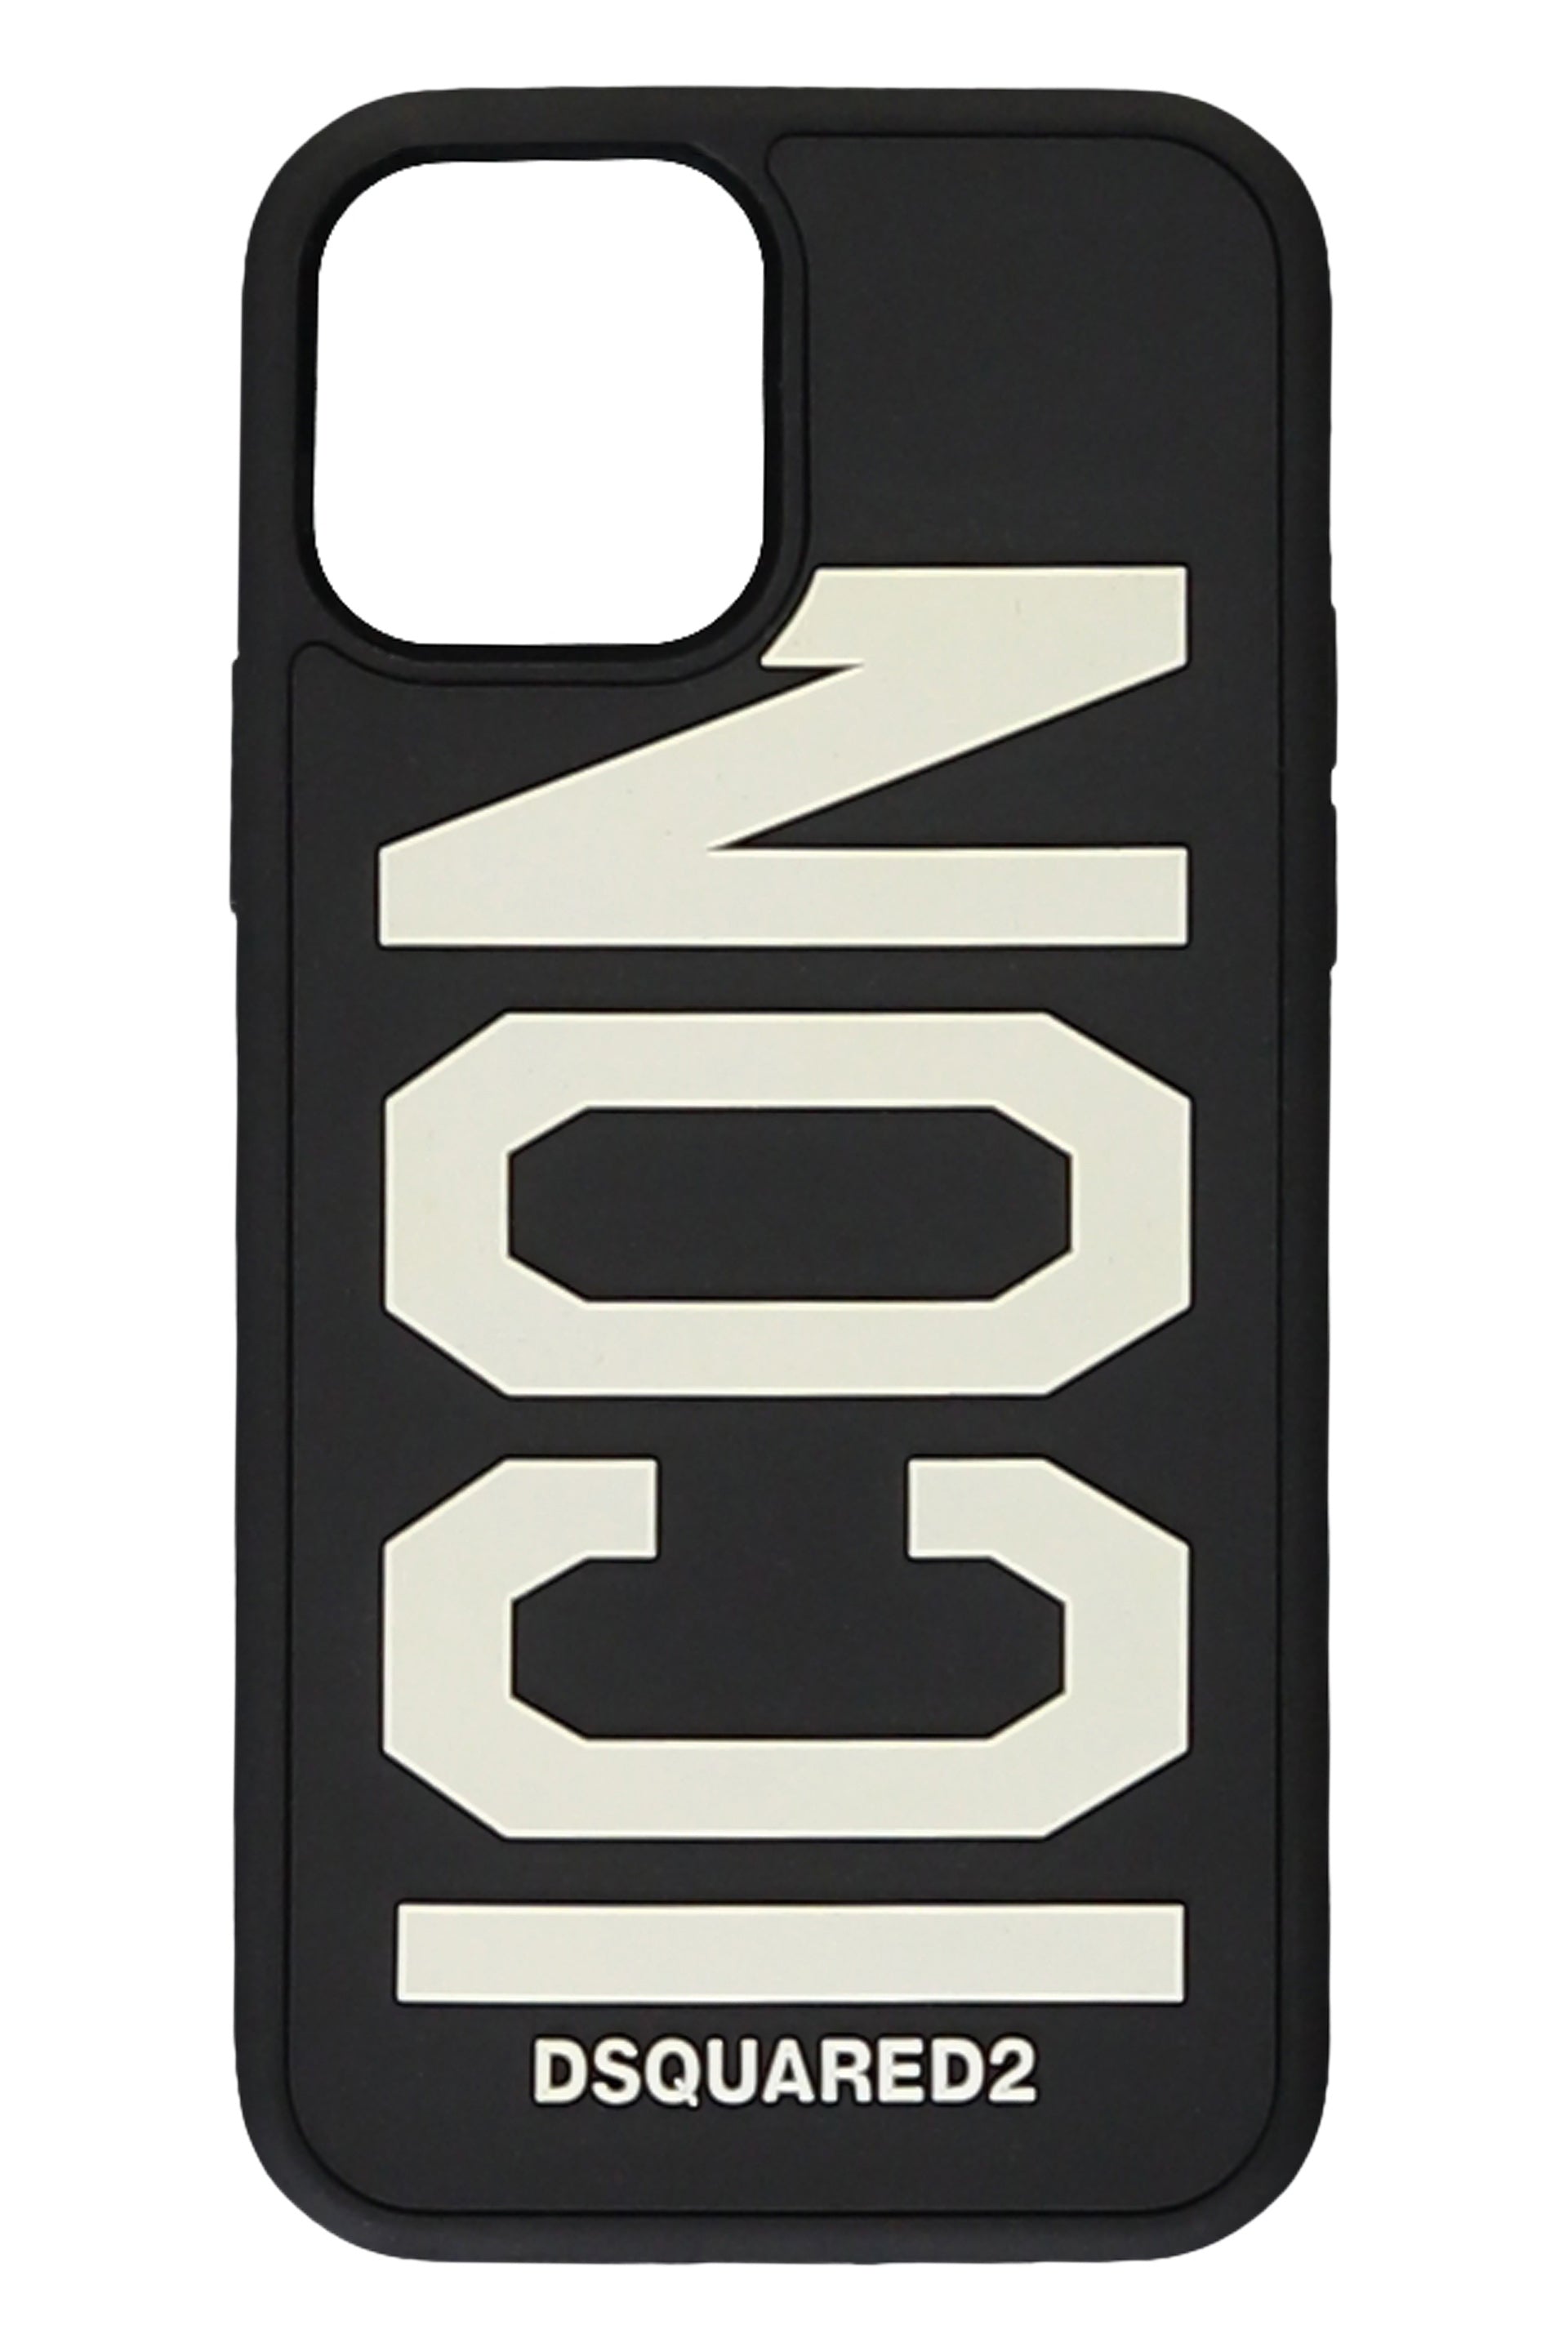 Dsquared2-OUTLET-SALE-Logo-detail-iPhone-12-PRO-case-Accessoires-TU-ARCHIVE-COLLECTION.jpg